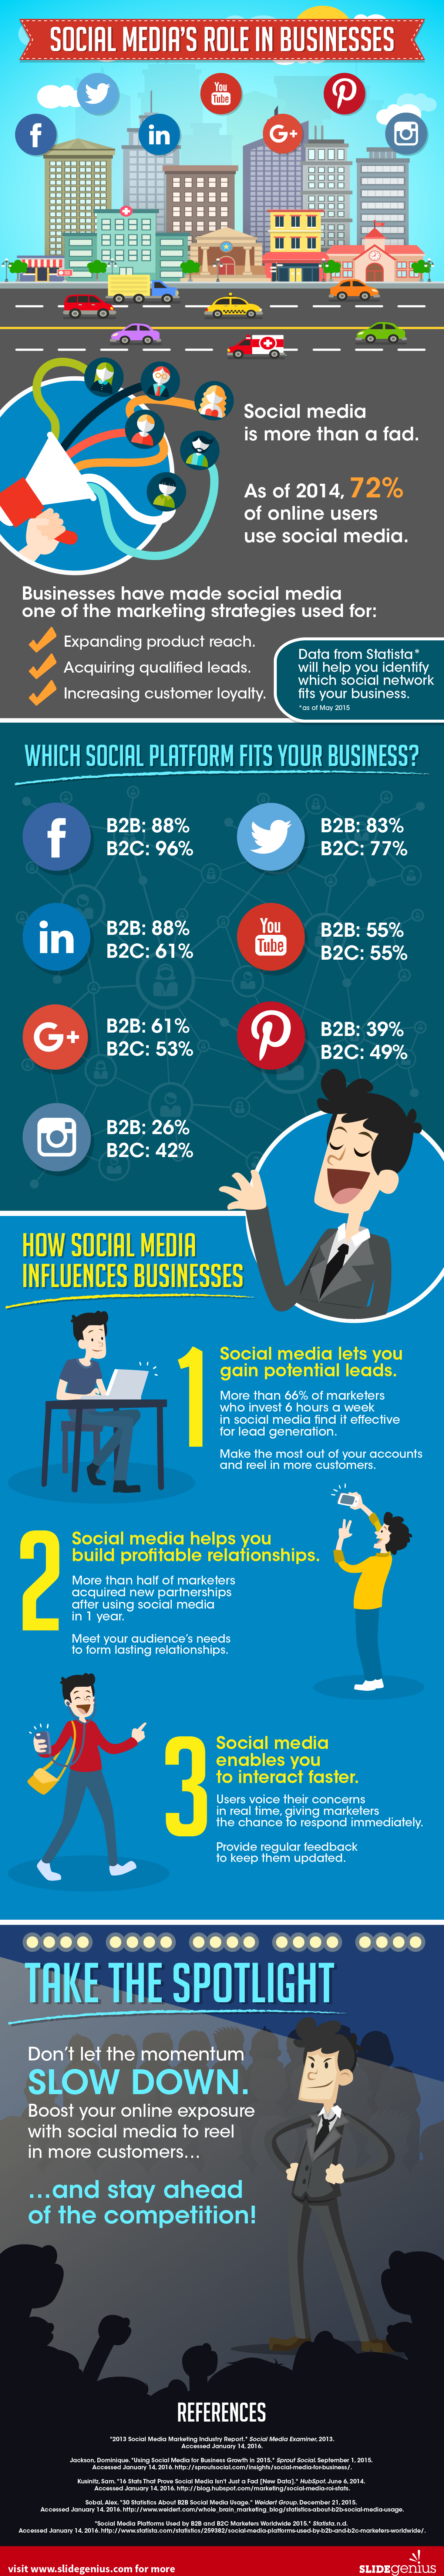 Social Media's Role in Businesses - SlideGenius Infographic